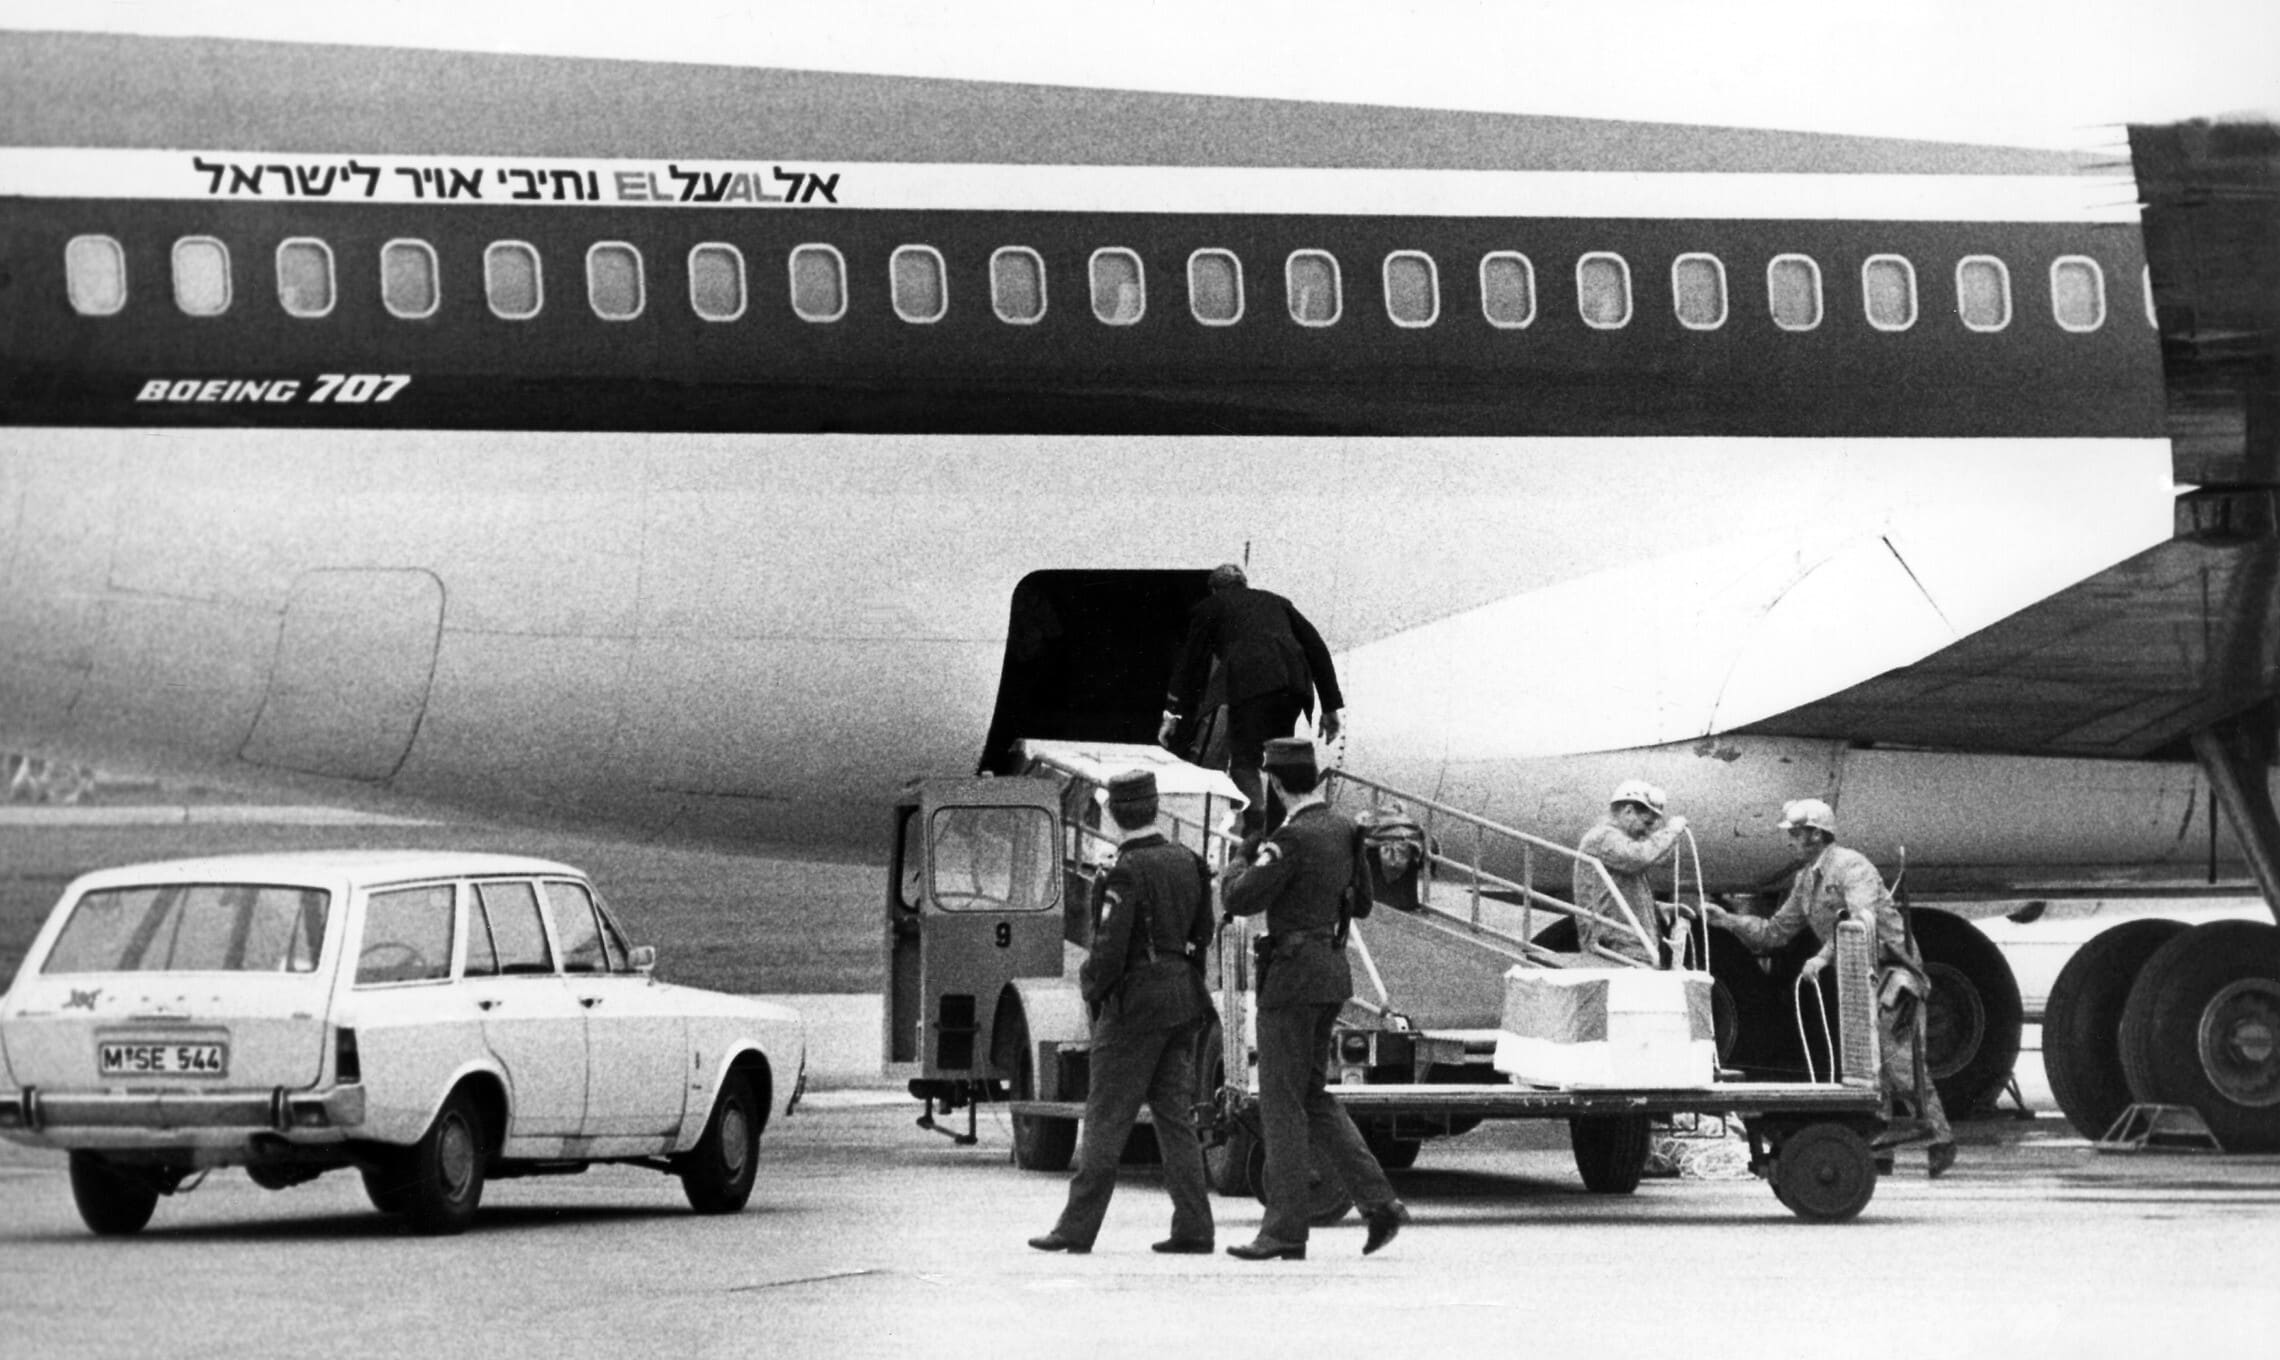 ארונותיהם של שניים מהספורטאים שנרצחו באולימפיאדת מינכן מועלים על מטוס אל-על בבסיס חיל האוויר פירסטנפלדברוק, 7 בספטמבר 1972 (צילום: AP)